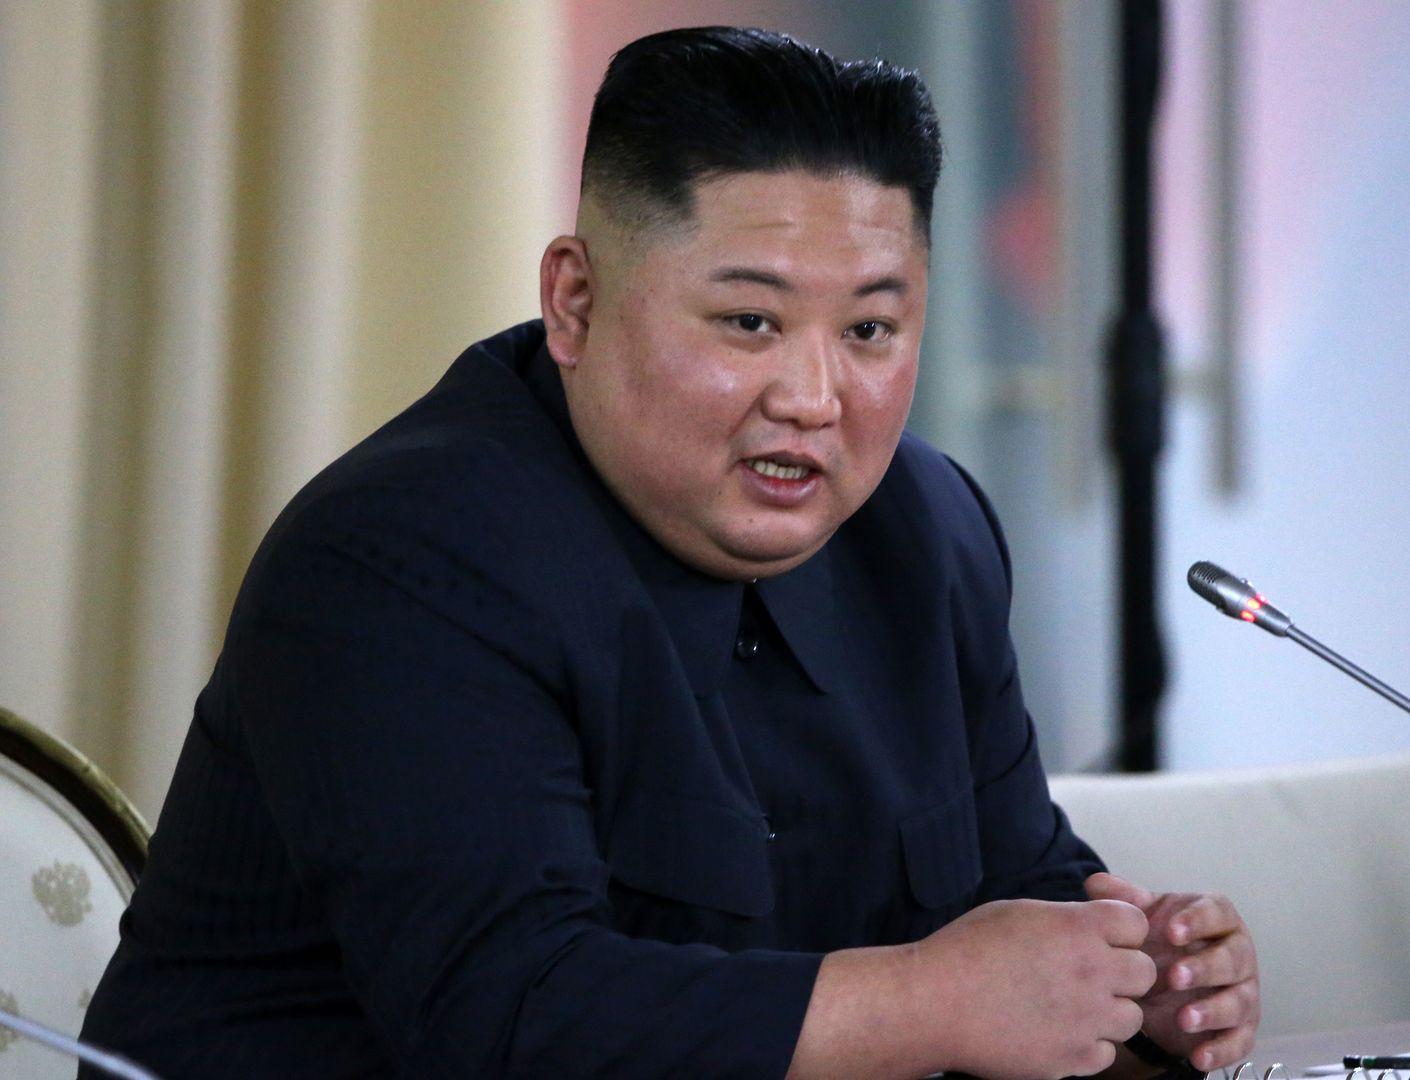 Według oficjalnych informacji podawanych przez północnokoreańskiego przywódcę Kim Dzong Una, w państwie nie ma przypadków zachorowań na koronawirusa.